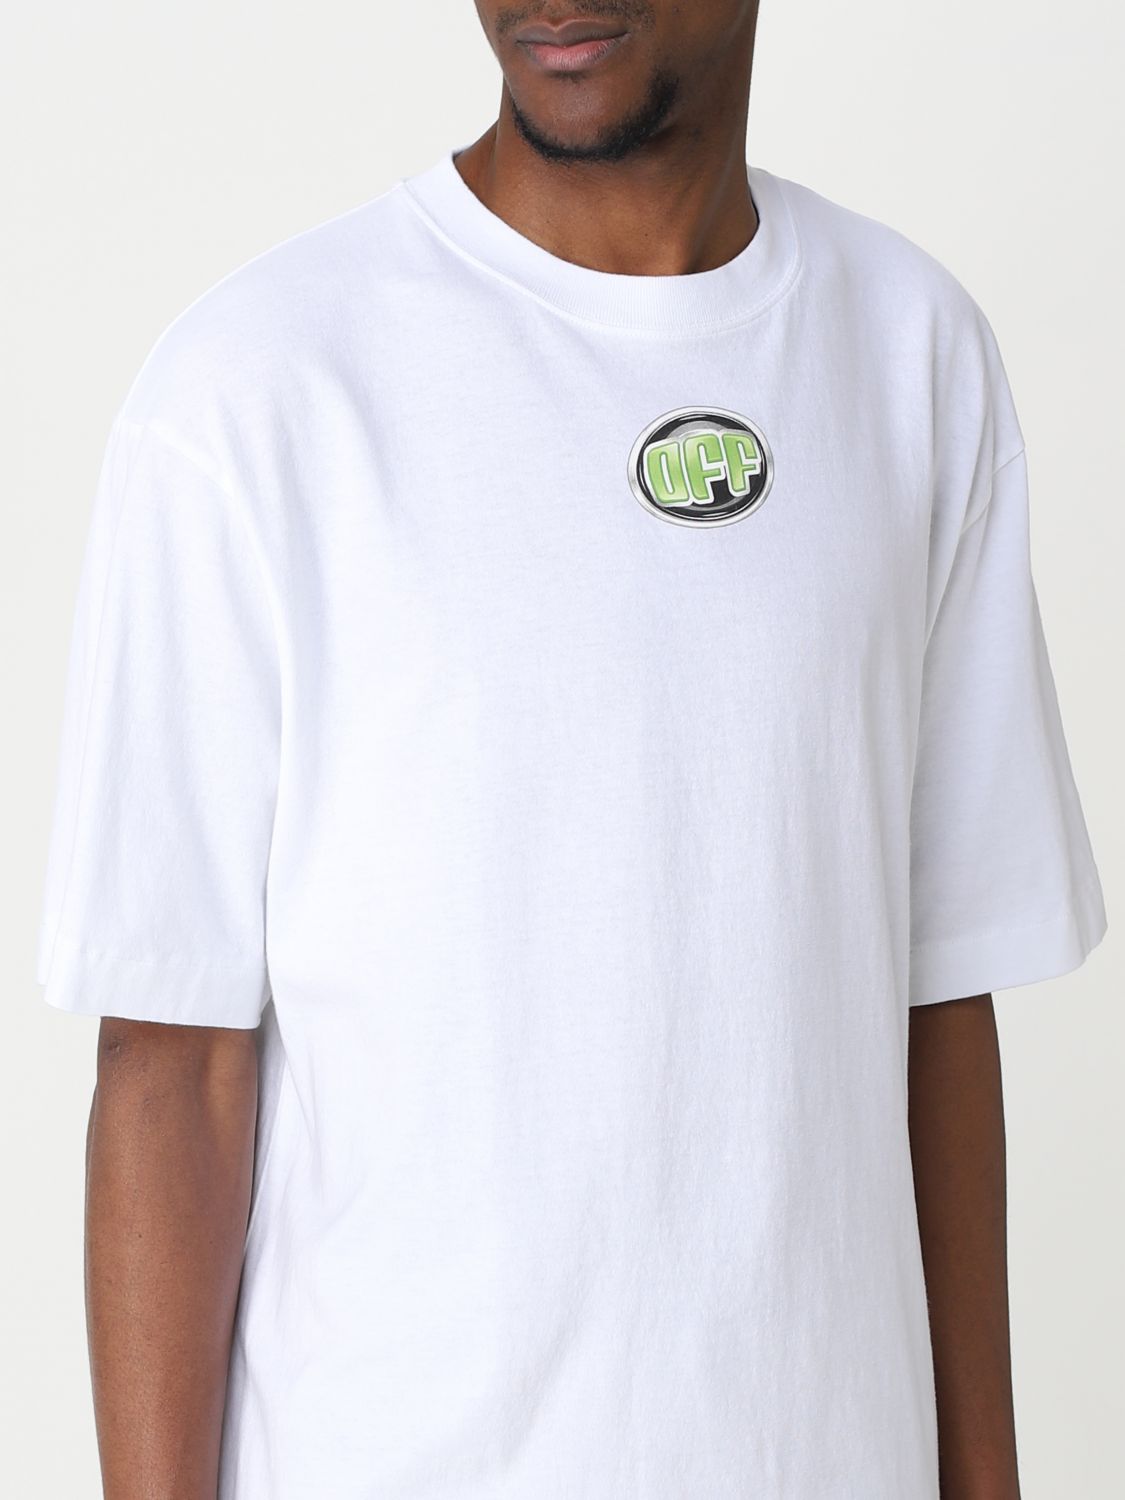 Basic Off-White t-shirt with logo